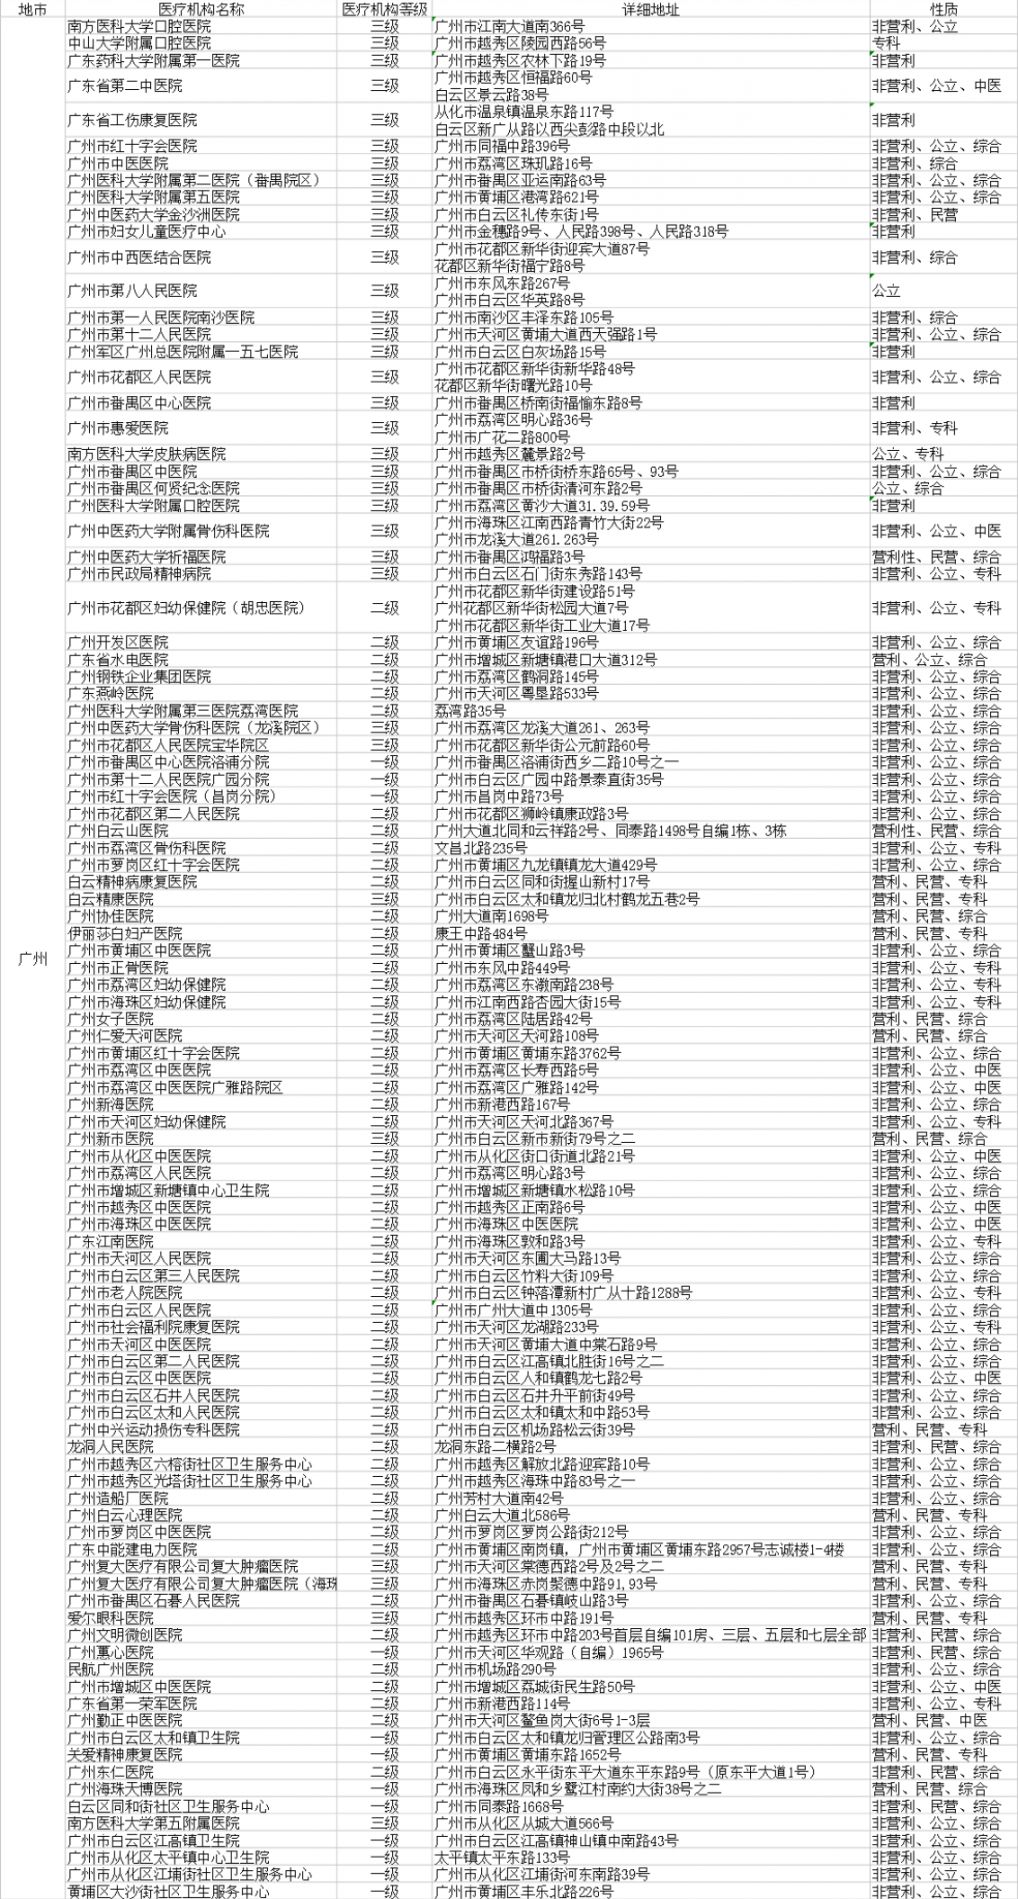 惠州市外联网非协议医院名单